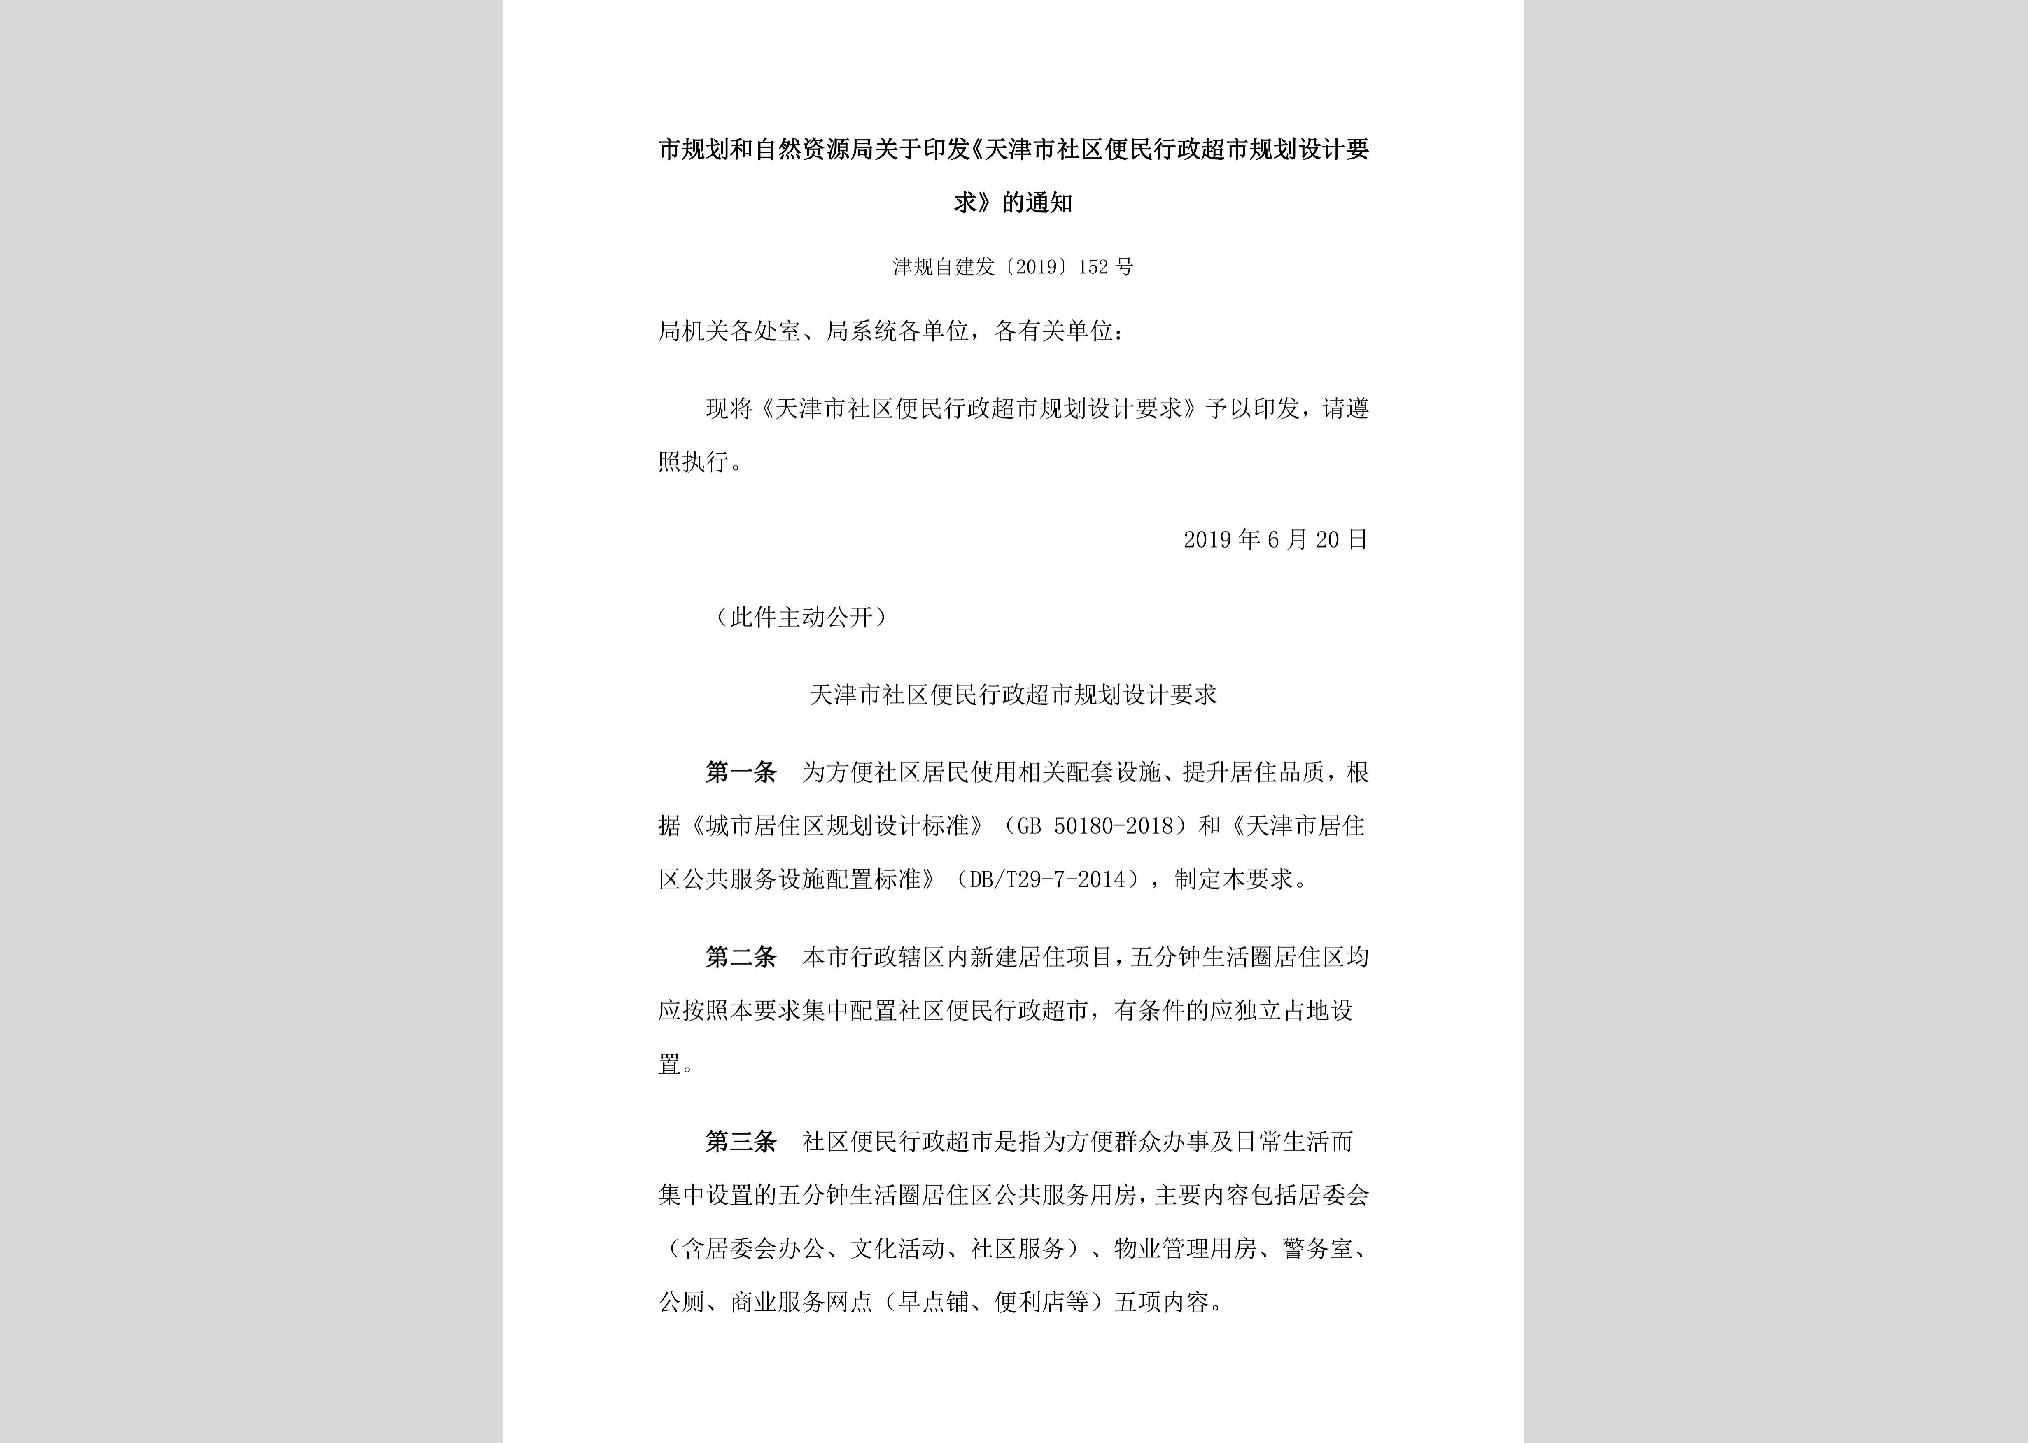 津规自建发[2019]152号：市规划和自然资源局关于印发《天津市社区便民行政超市规划设计要
求》的通知